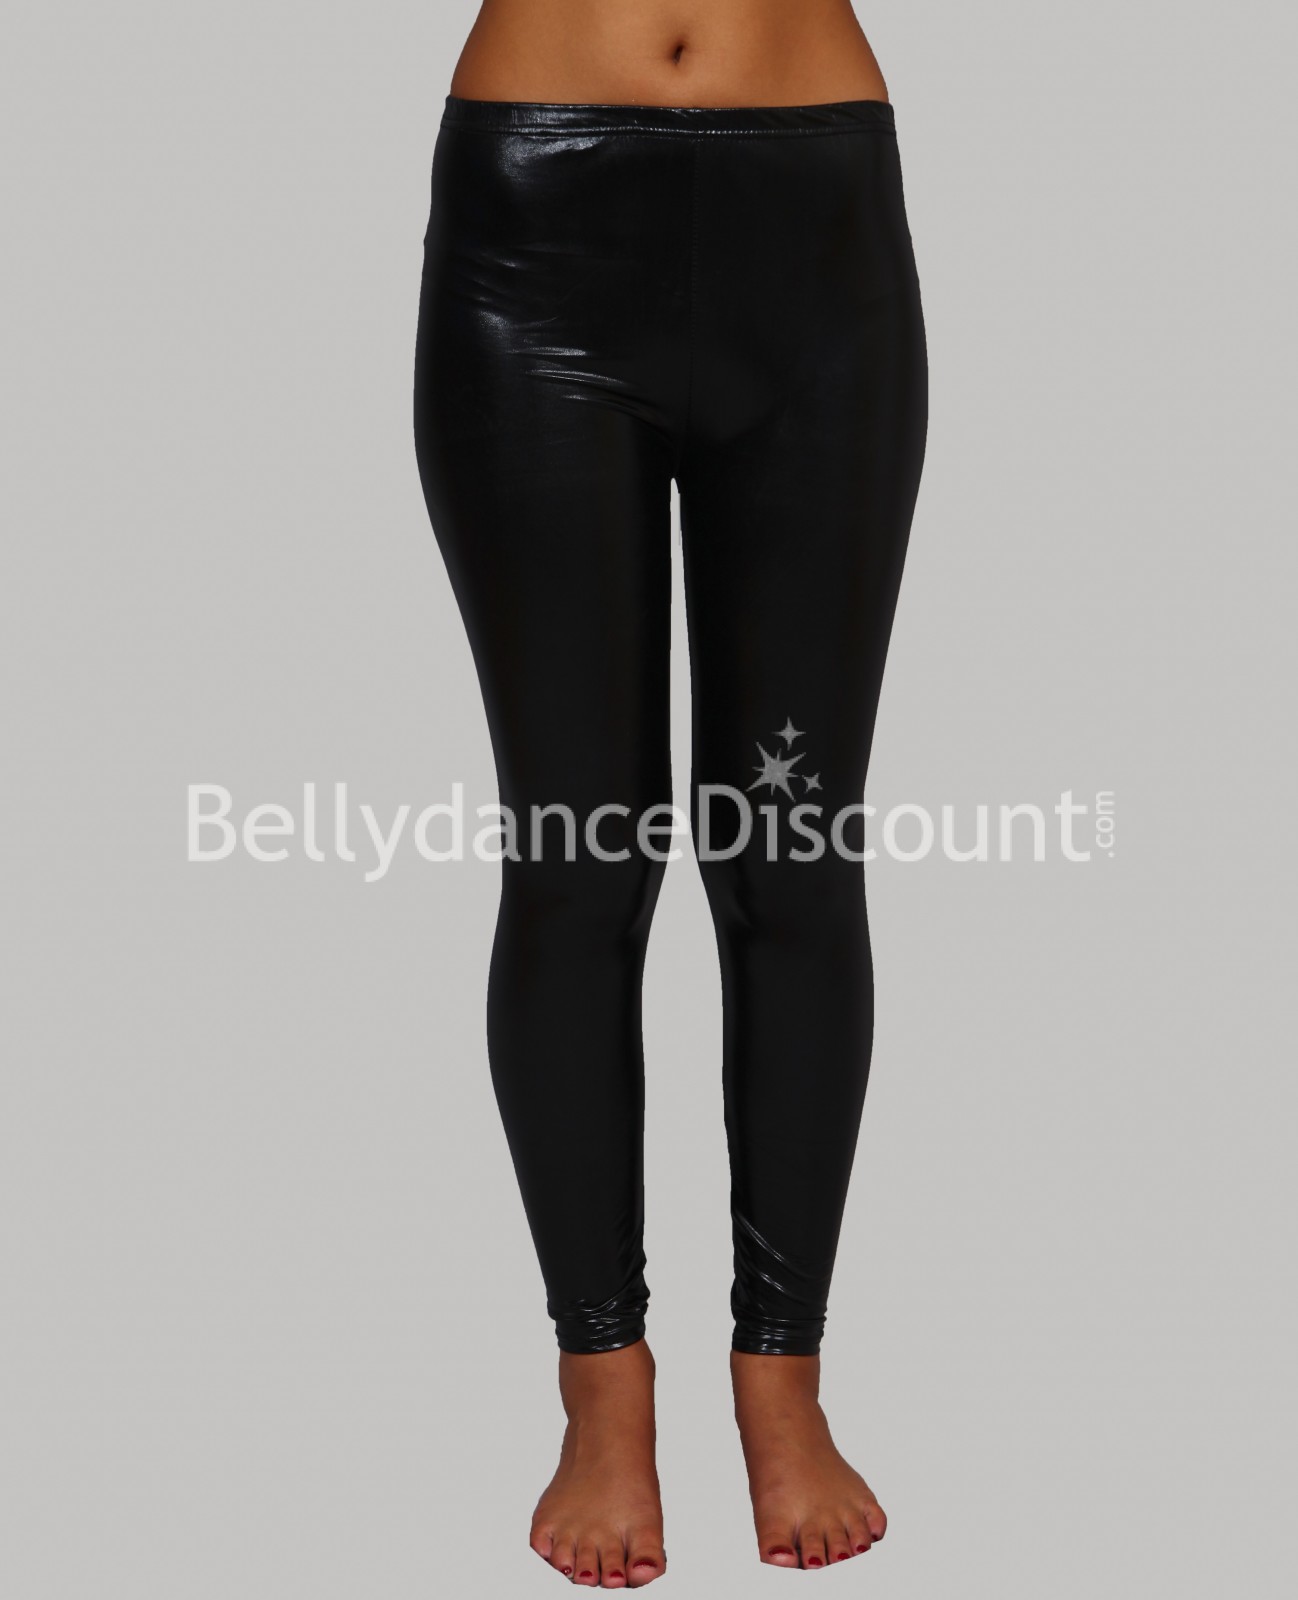 Metallic black Bellydance leggings